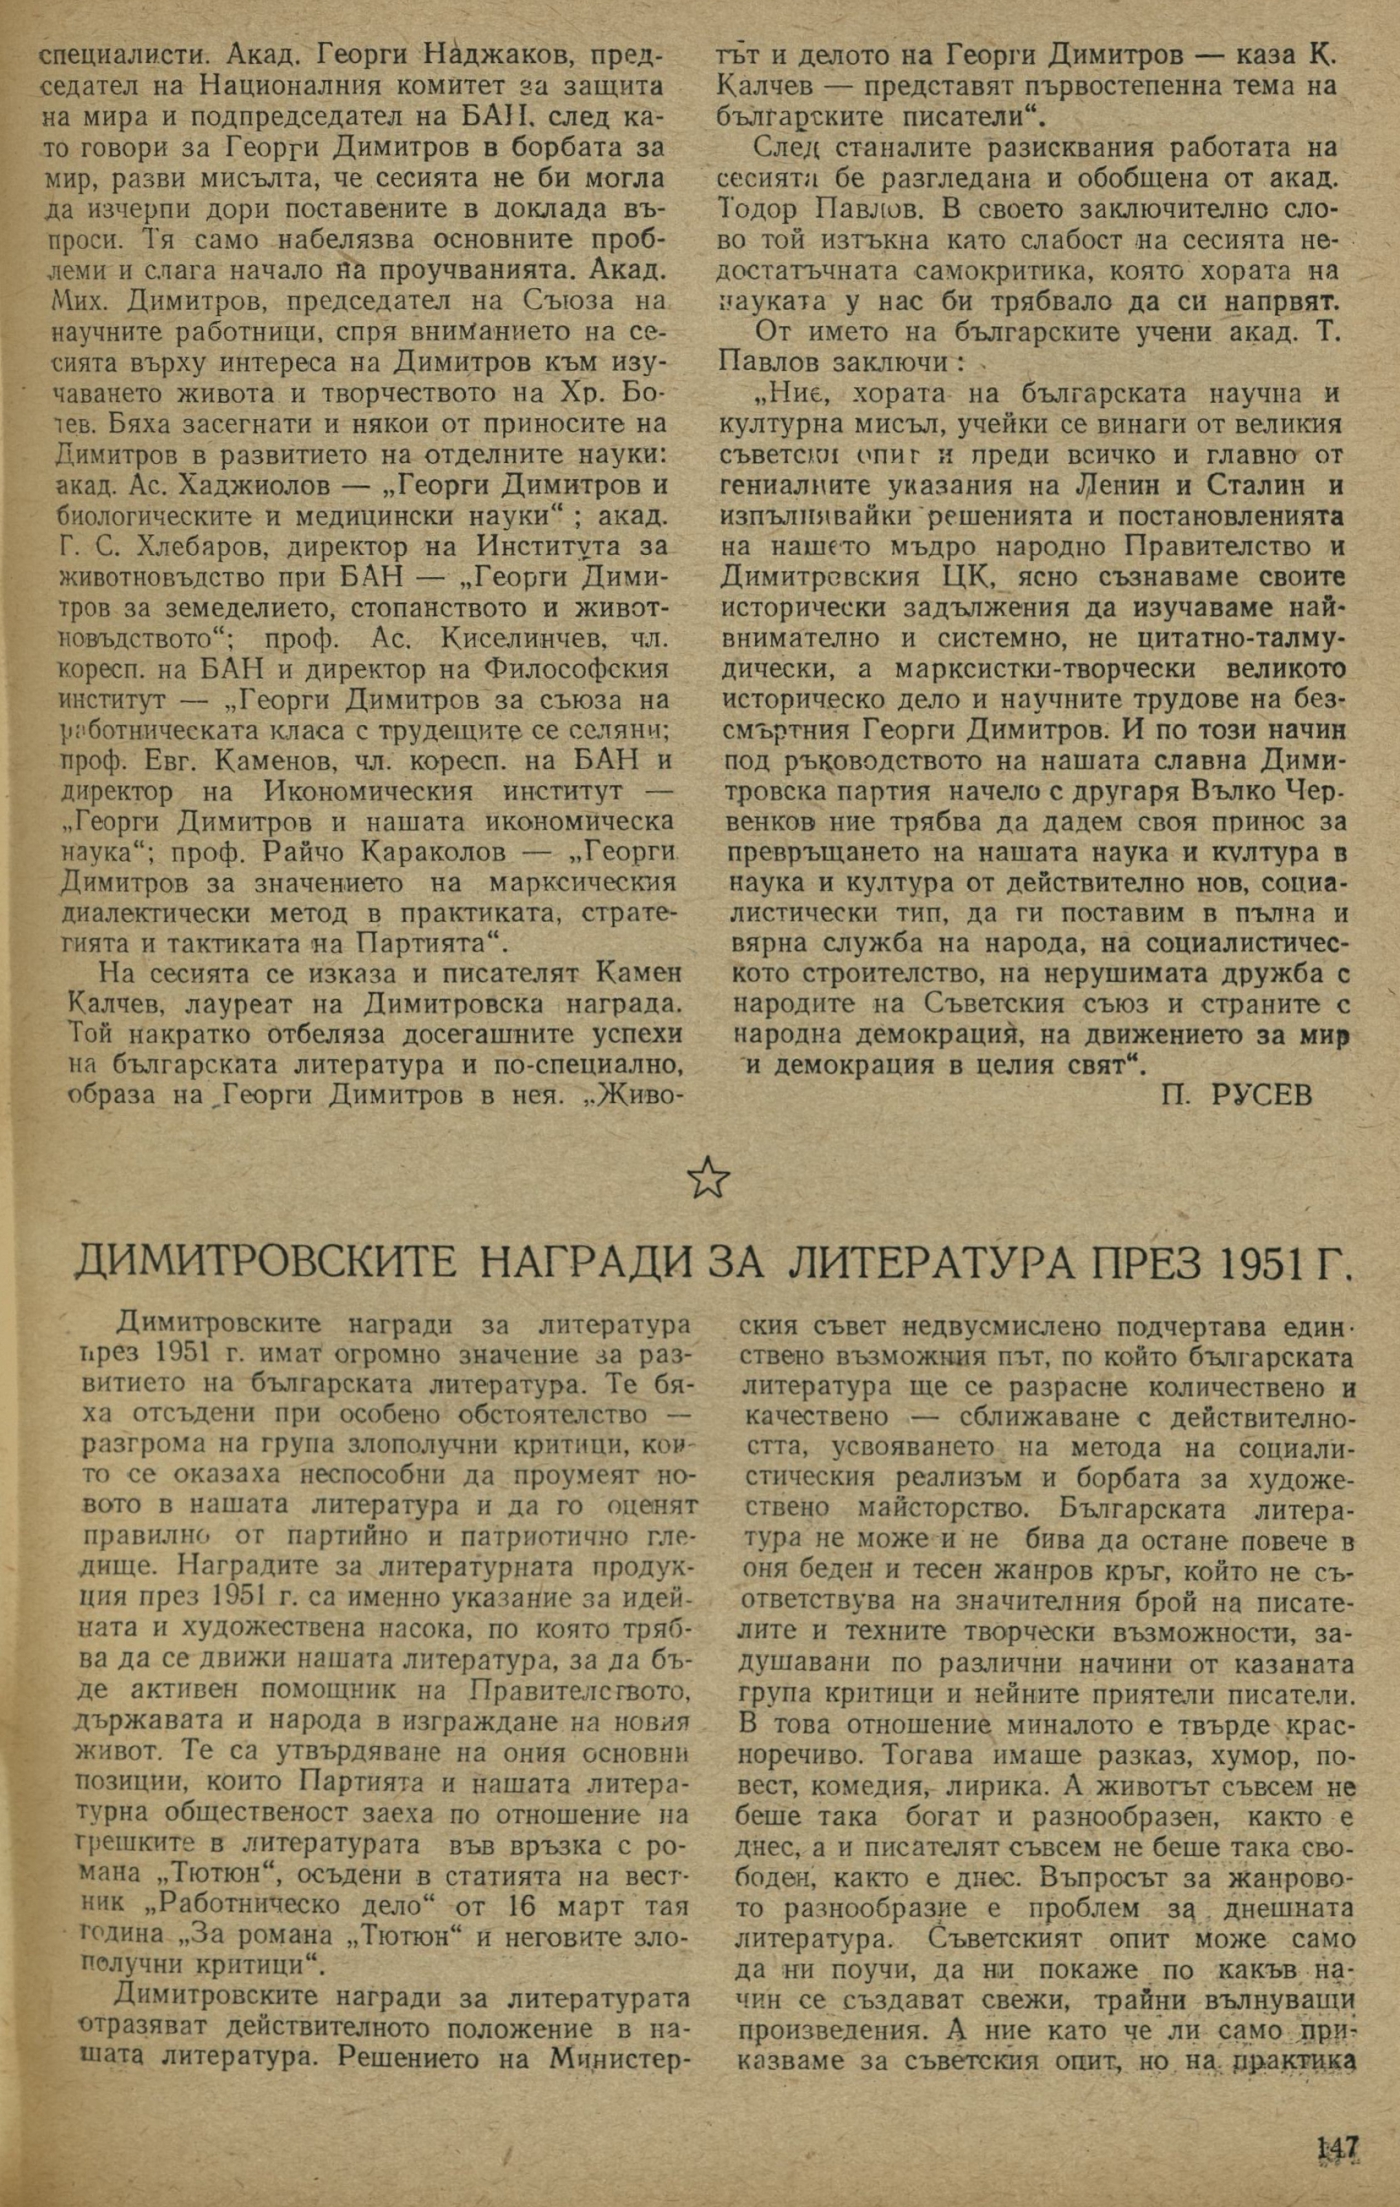 Димитровските награди за литература през 1951 г.